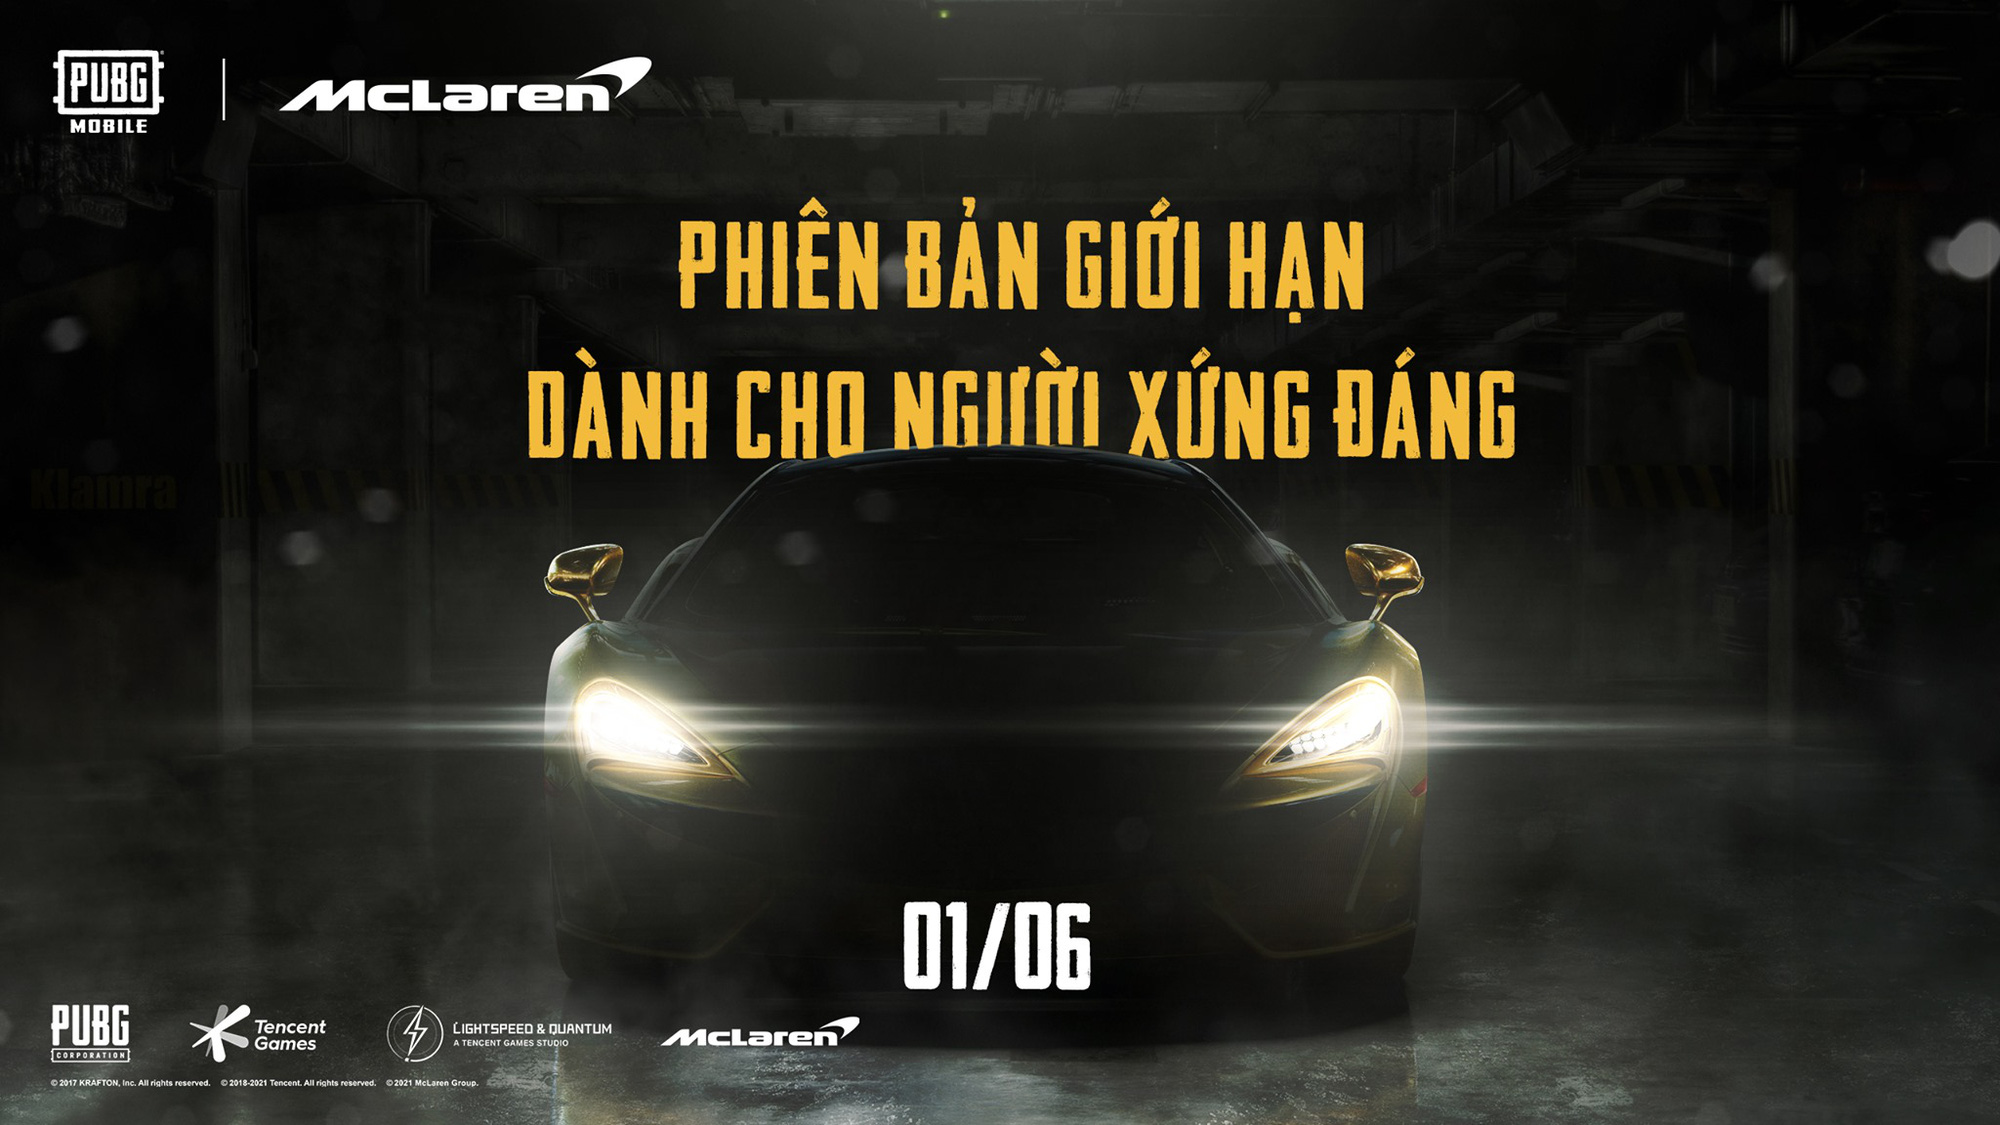 Hợp tác cùng hãng xe McLaren, PUBG Mobile ra mắt sự kiện siêu tốc, hấp dẫn nhất làng game tháng 6 - Ảnh 1.